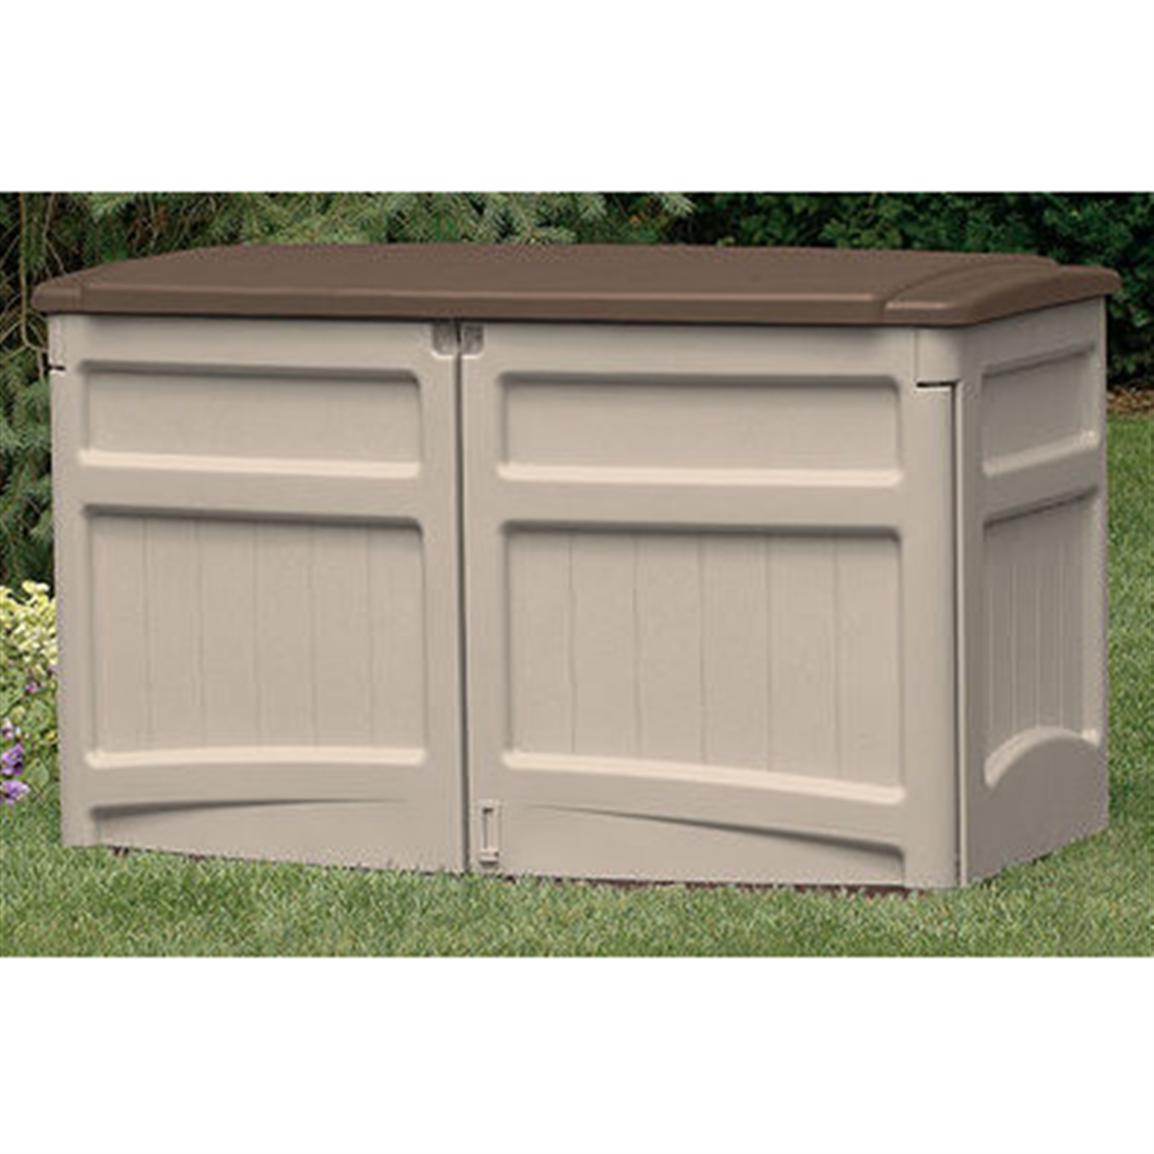 suncast® horizontal storage shed - 138480, patio storage